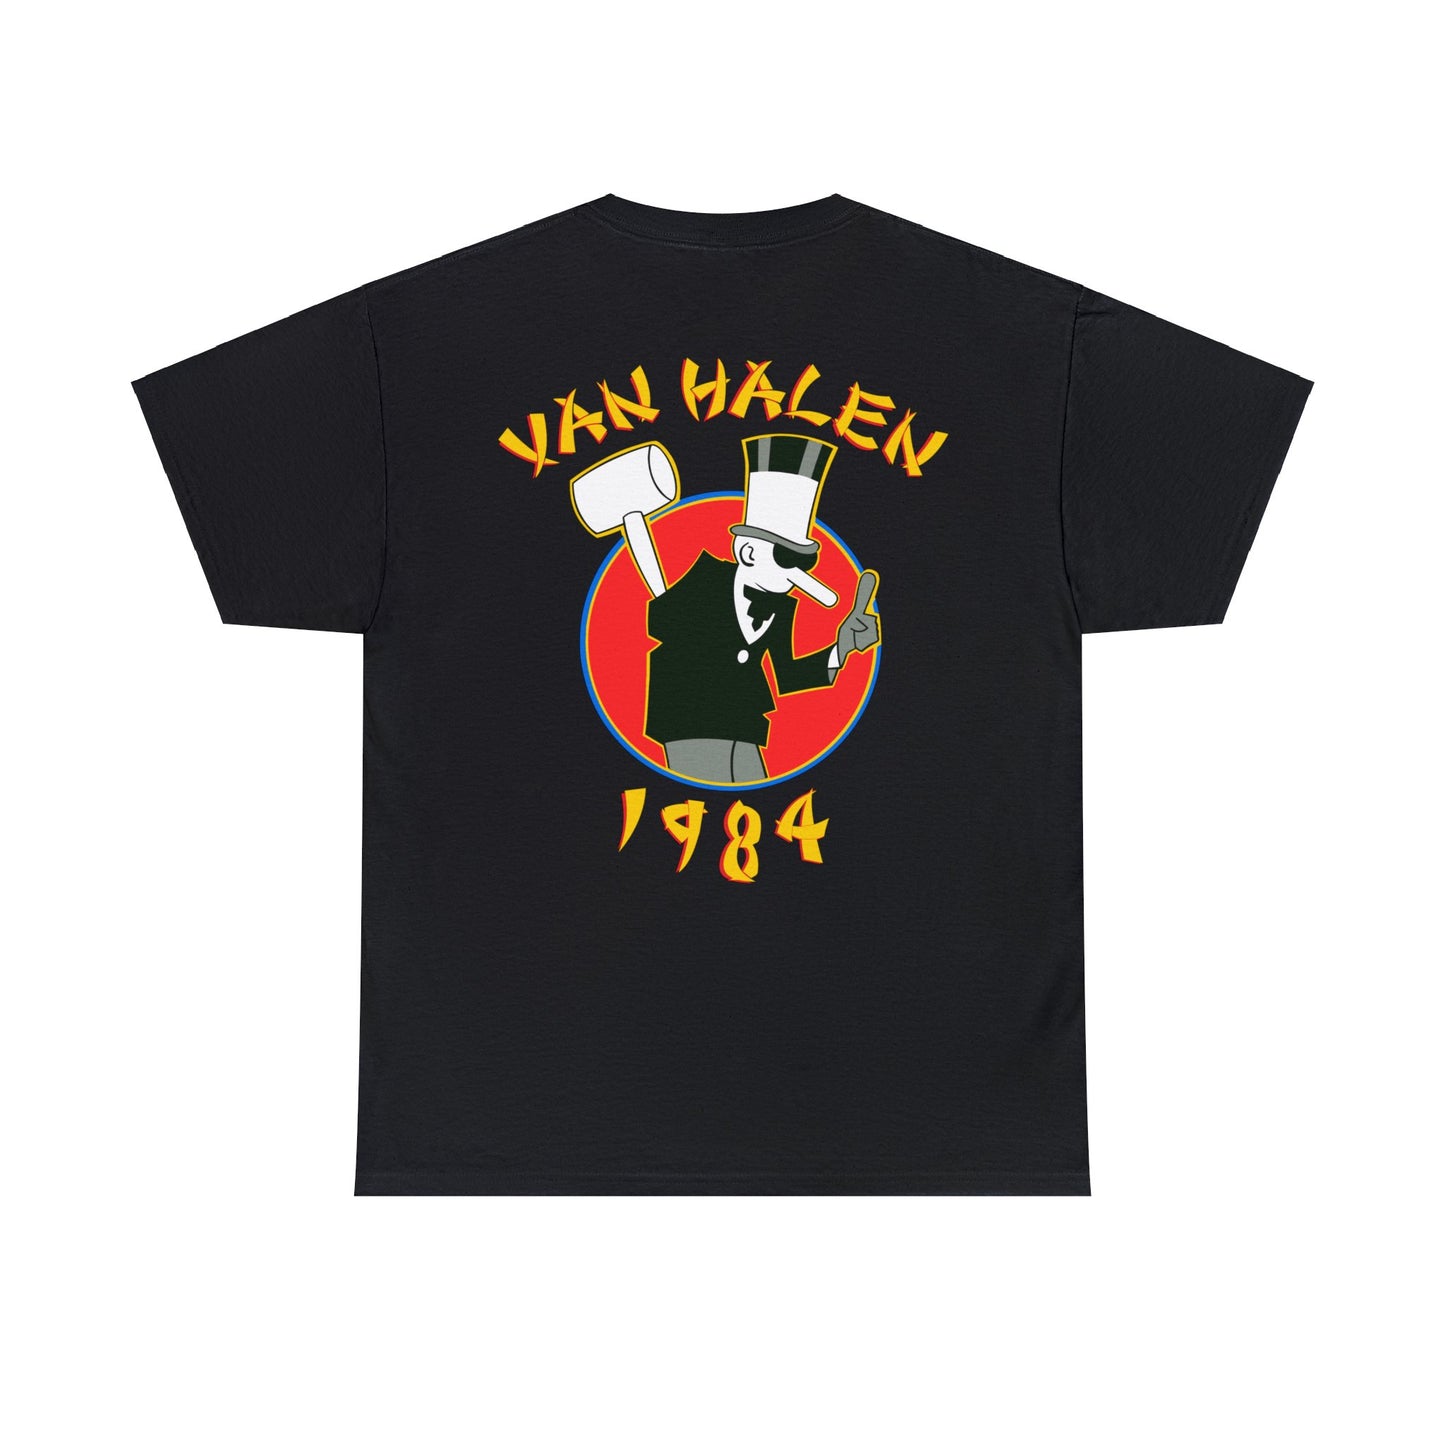 Van Halen 1984 Tour of the World 2 Sided T-Shirt S - 5XL